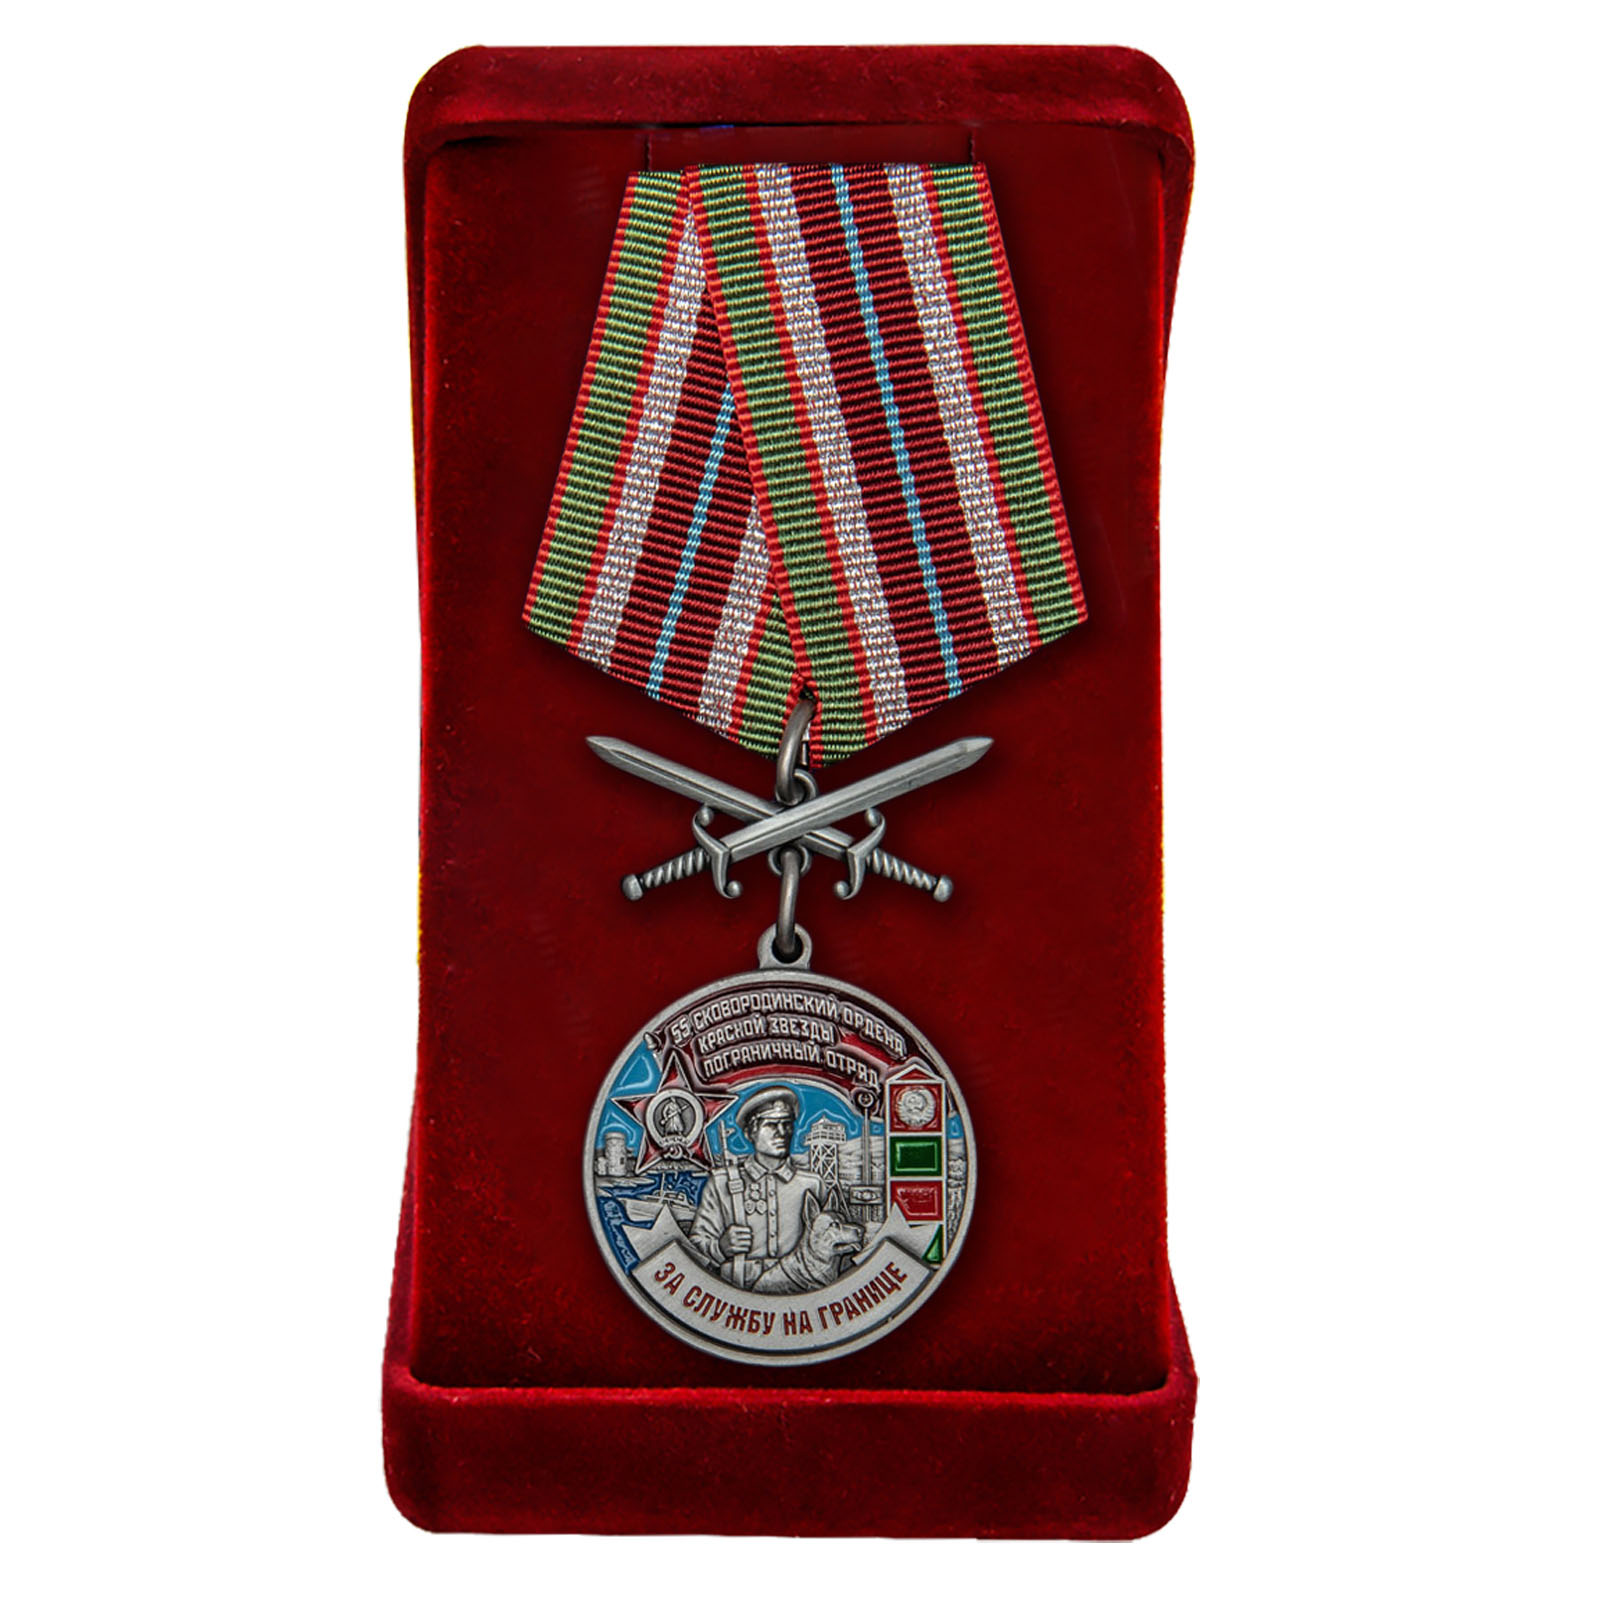 Купить медаль За службу на границе (55 Сковородинский ПогО) в подарок